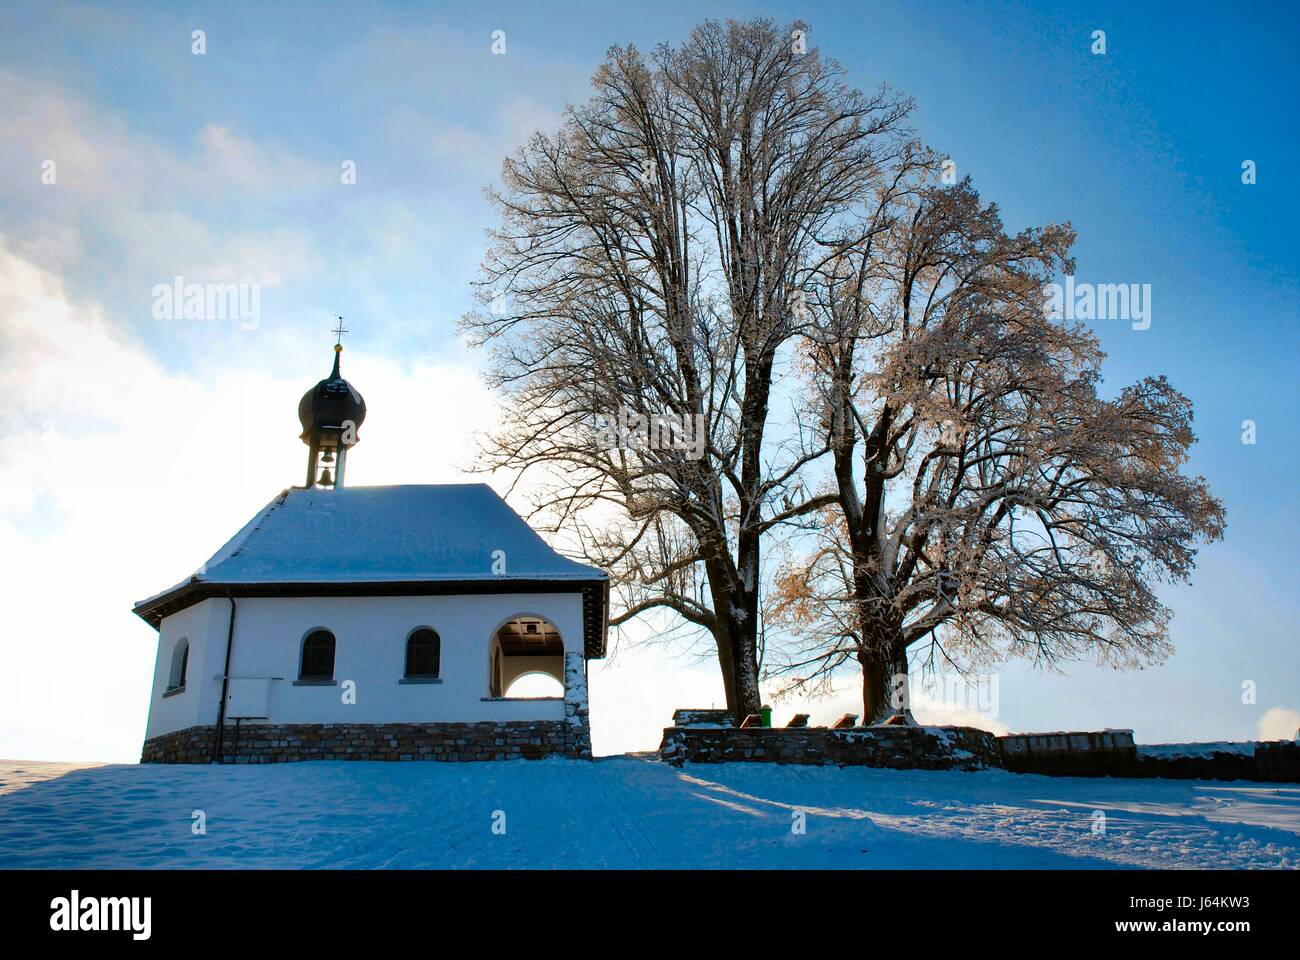 Überzeugung Baum Winter Kapelle Track Kalk Schnee Glanz erstrahlt lucent hell Stockfoto